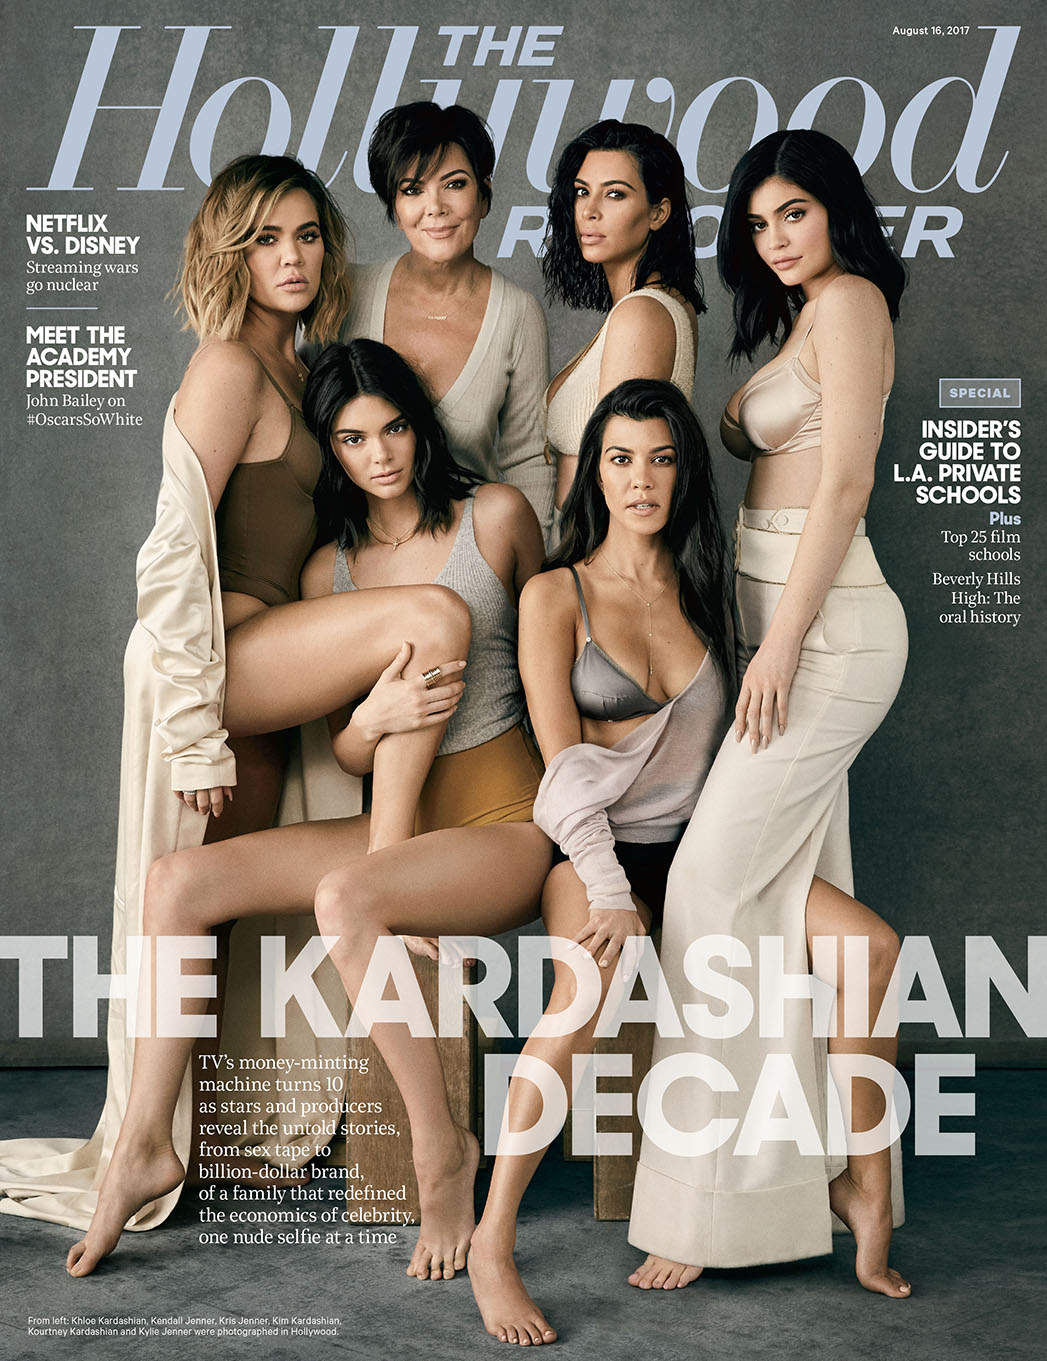 Se cumple una década de las Kardashian: Recordamos como empezó todo